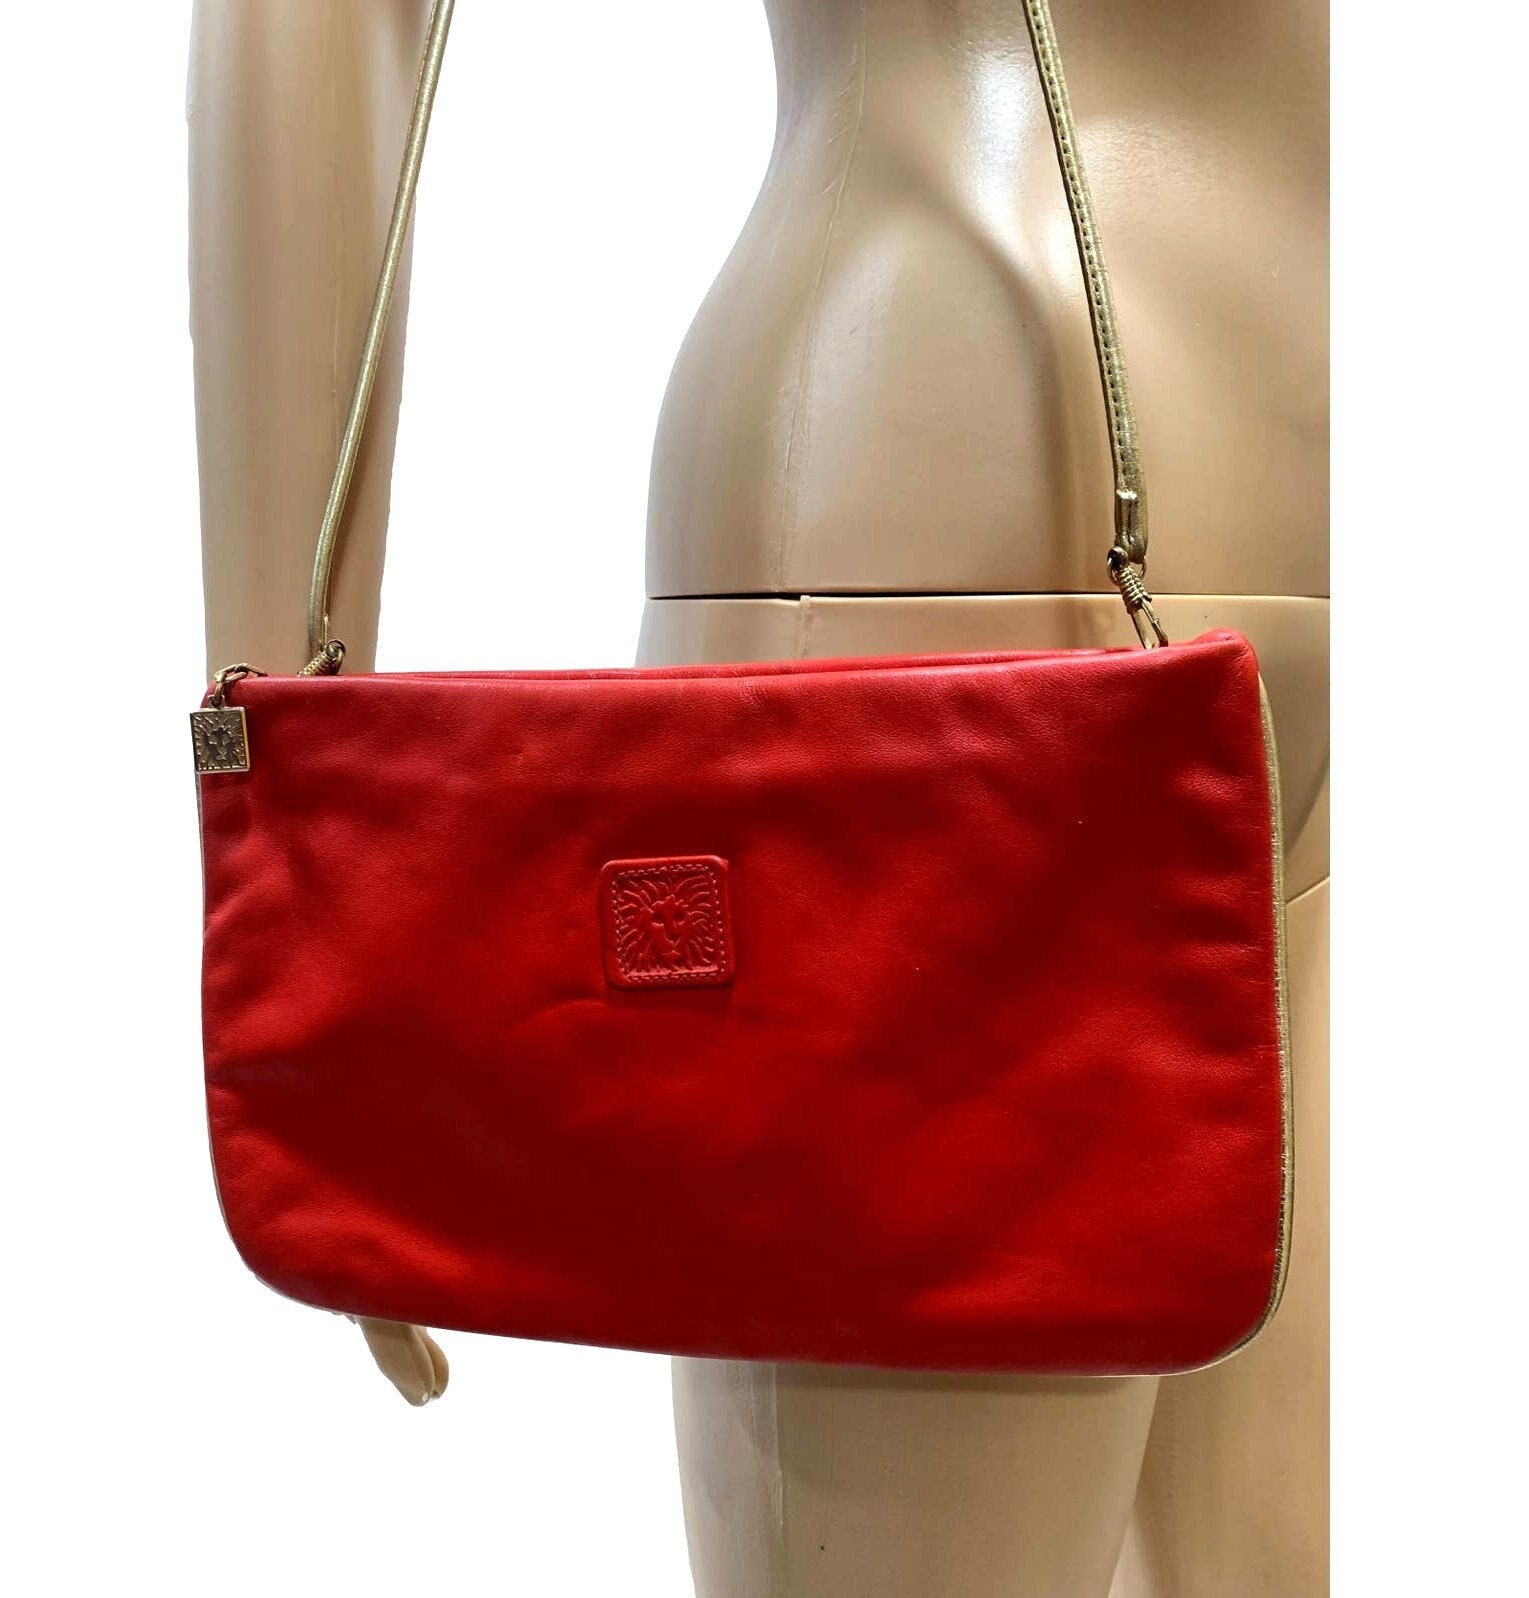 GORGEOUS maroon/burgundy #AnneKlein purse with gold... - Depop